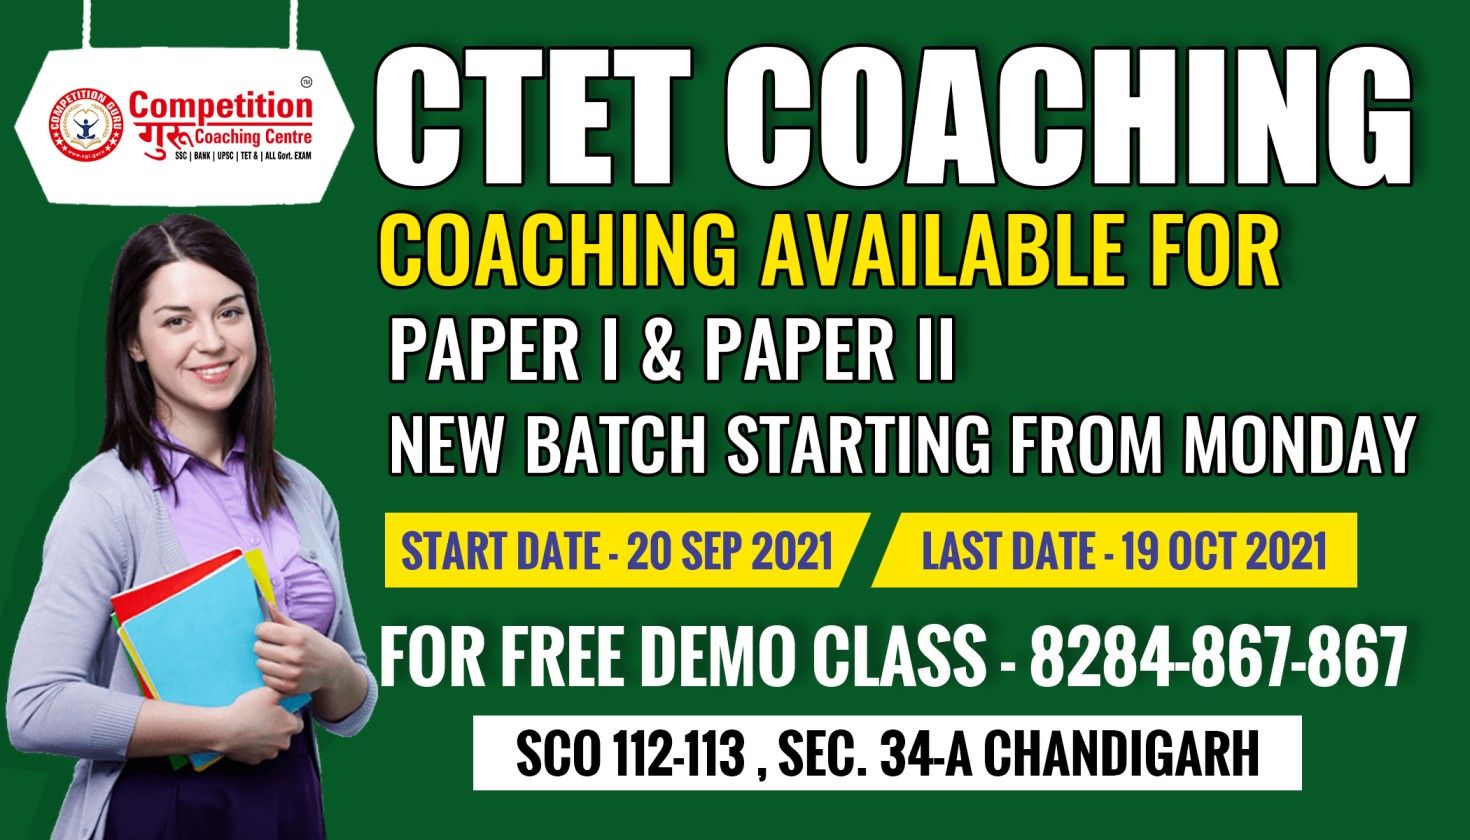 CTET Coaching in Chandigarh - Competition Guru Chandigarh